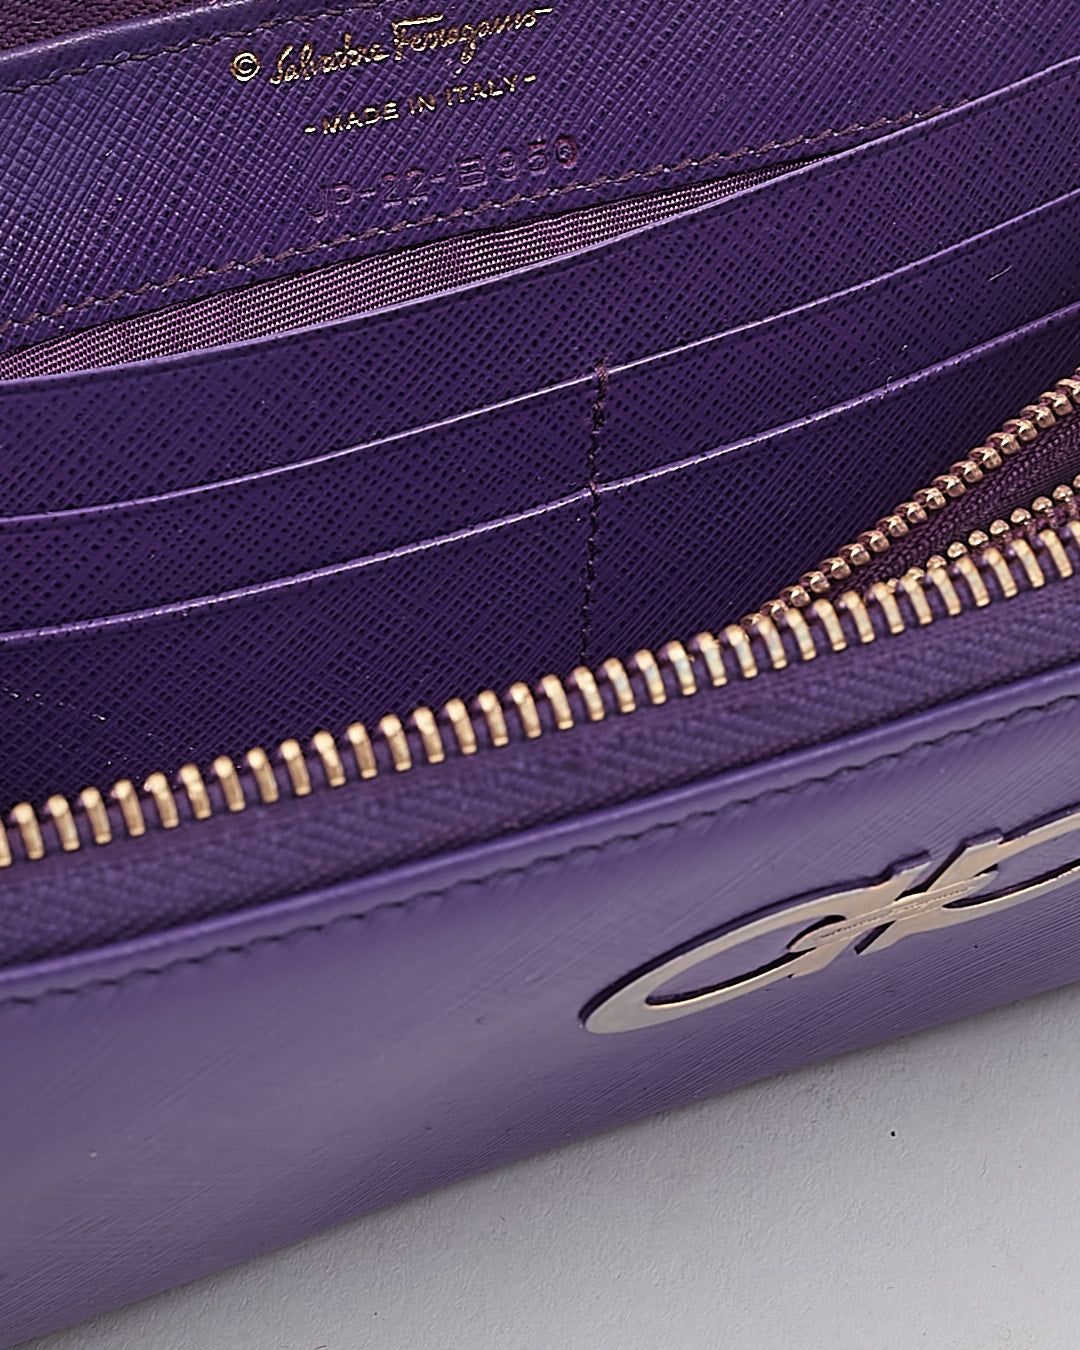 Ferragamo Purple Leather Gancini Wallet